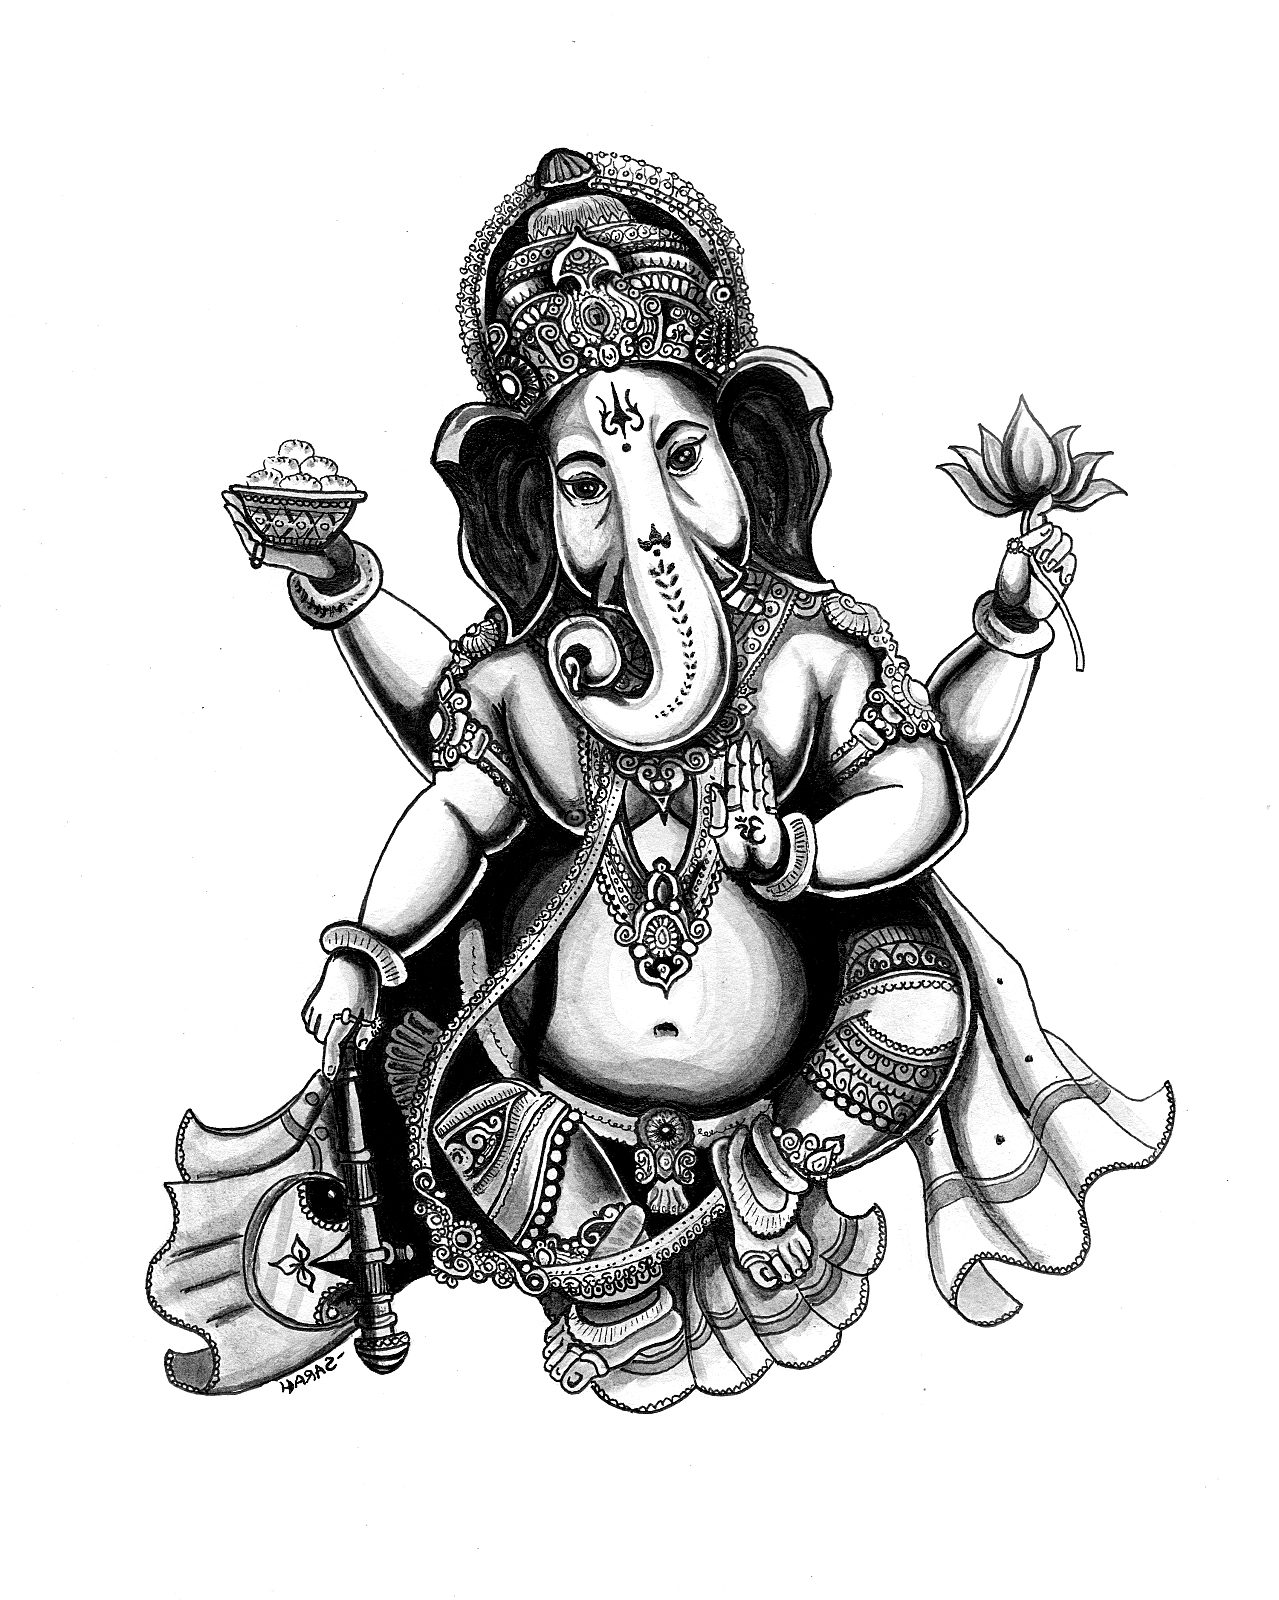 Magnifique dessin du Dieu à tête d'éléphant Ganesh, nombreux détails dans ses bijoux et ornements, minutie indispensable pour ce magnifique coloriage !